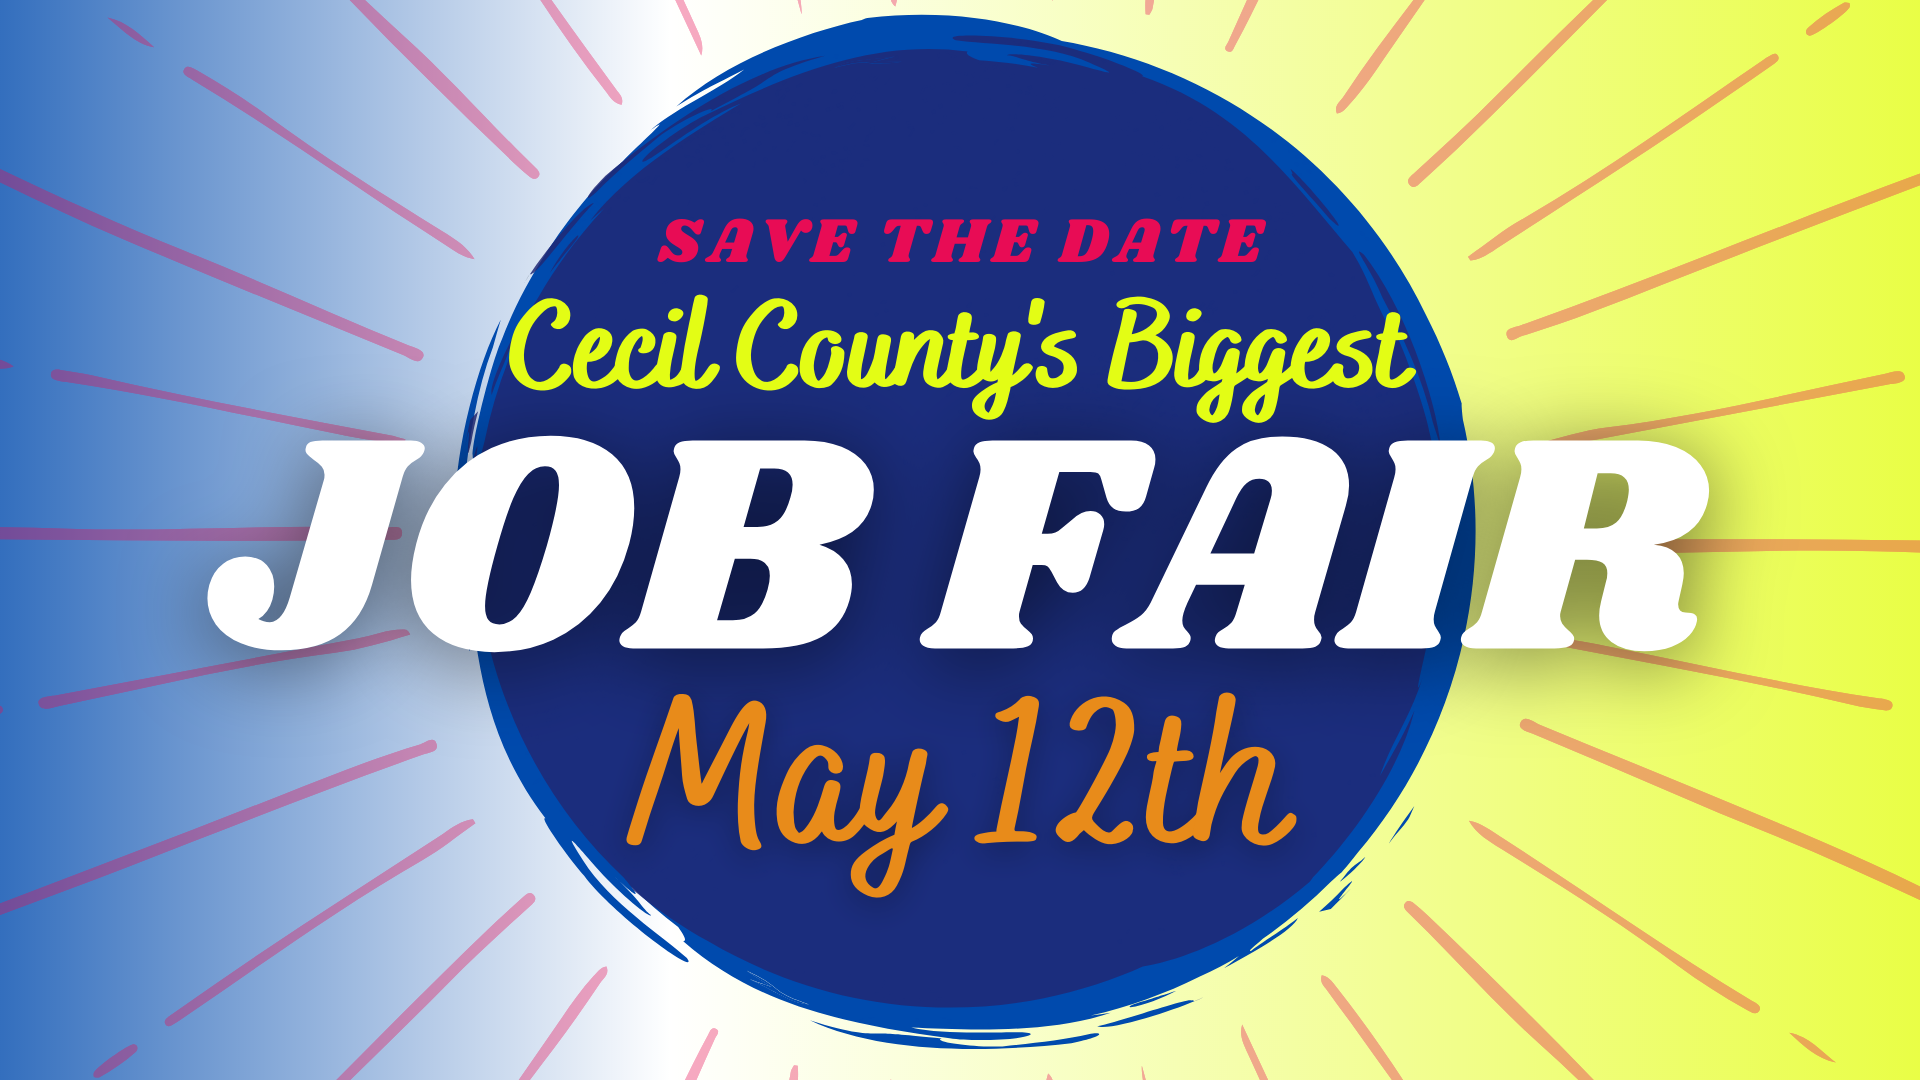 15th Annual Cecil County Job Fair